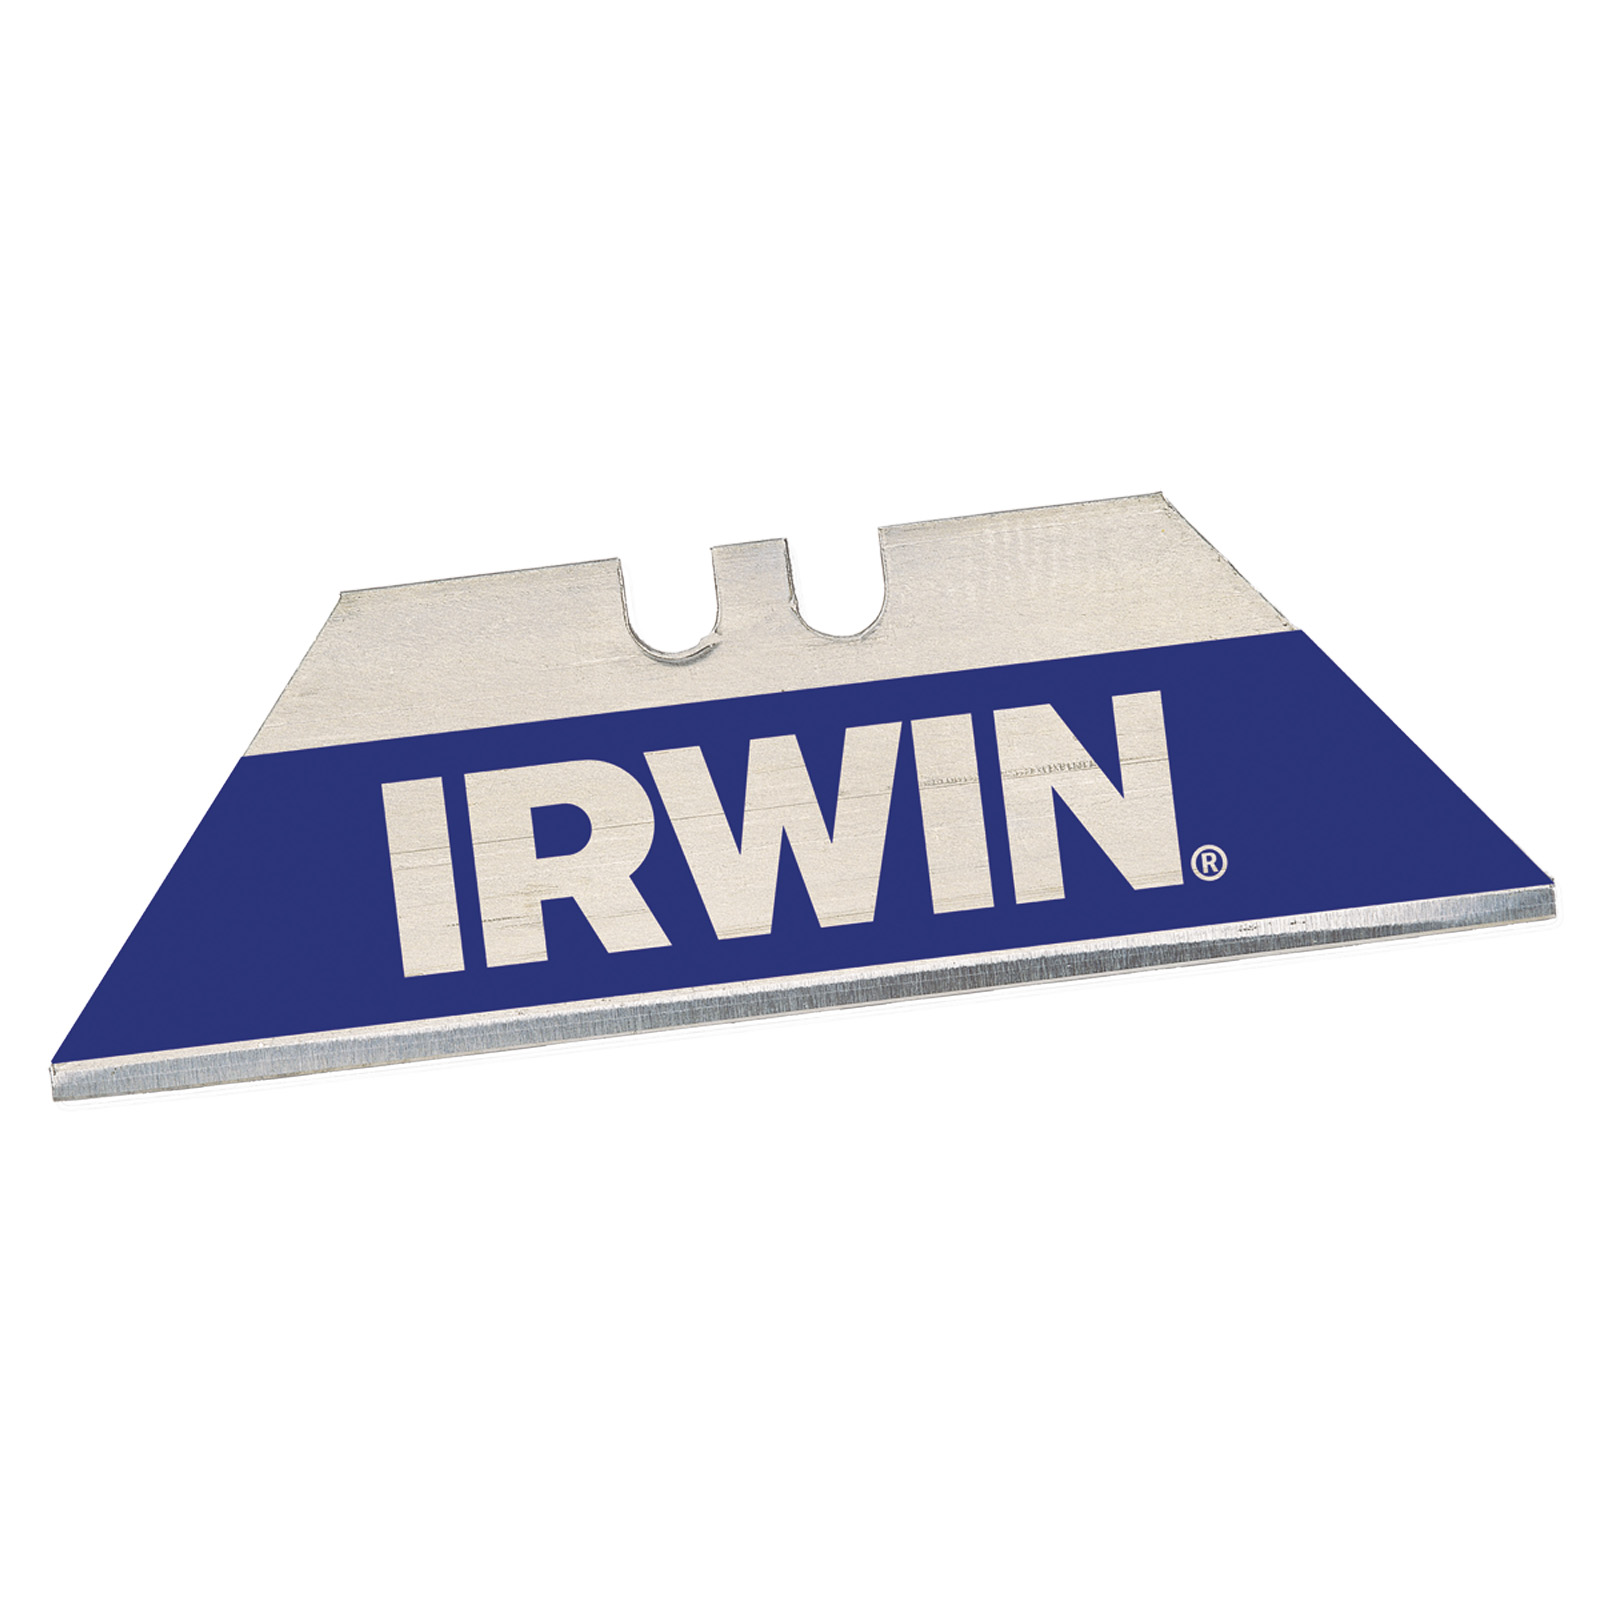 IRWIN Náhradní bimetalové čepele (břity) "blue blade" 1bal/5ks